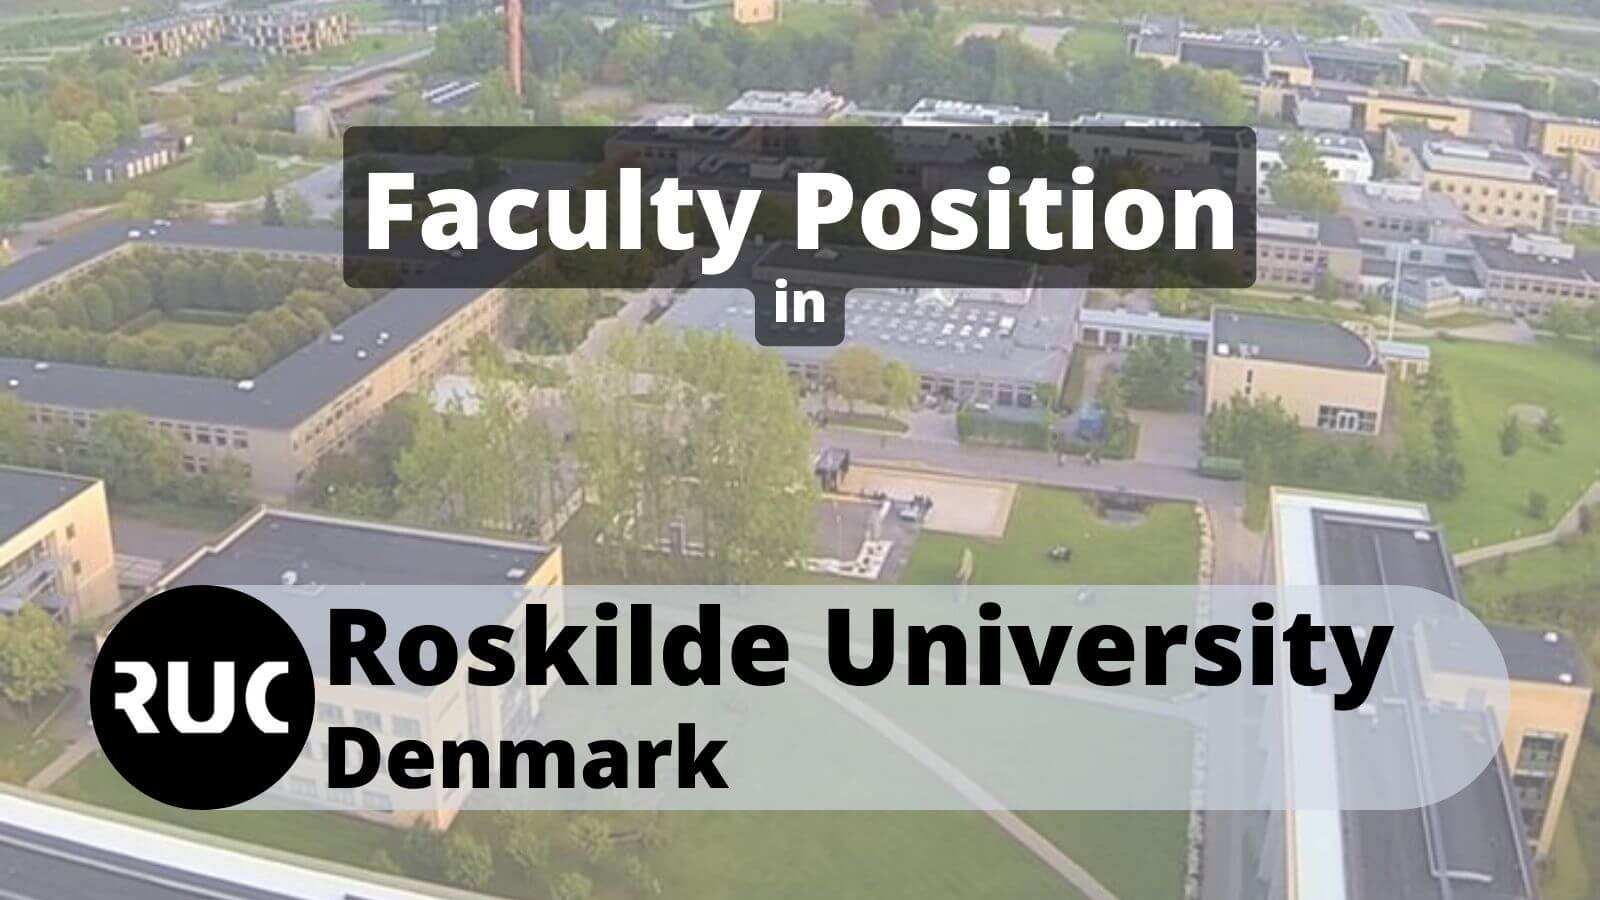 Faculty Position in Roskilde University Denmark